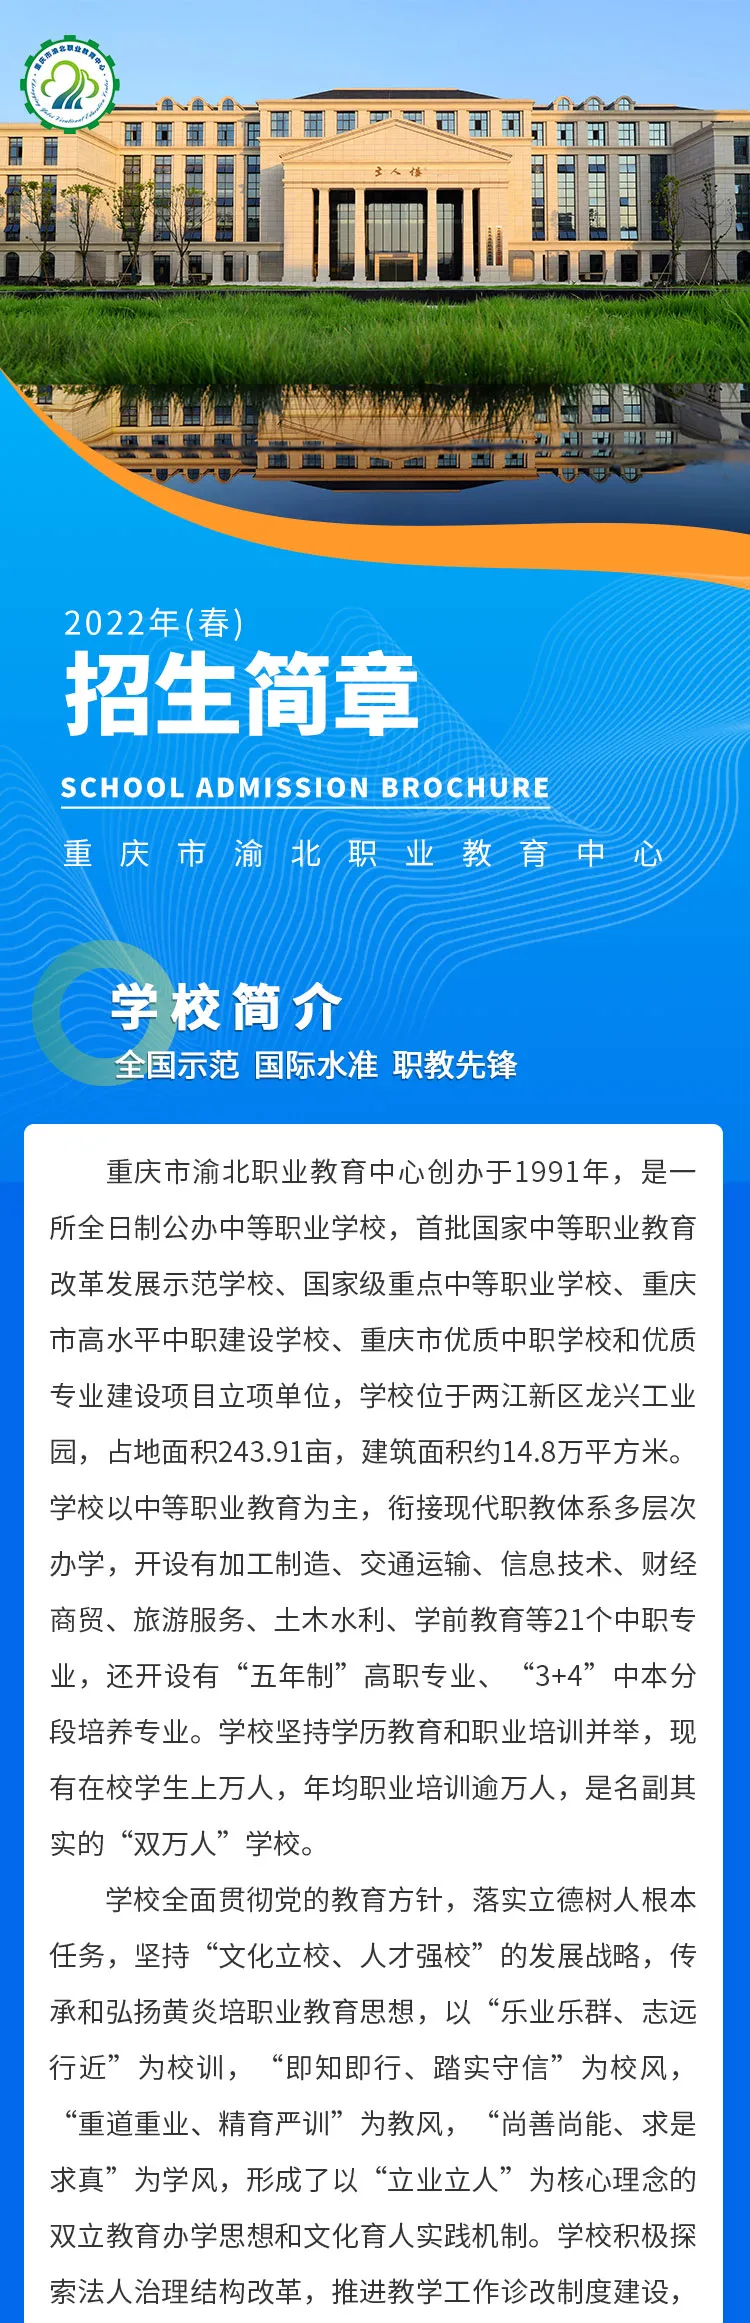 重庆市渝北职业教育中心2022年(春)招生简章